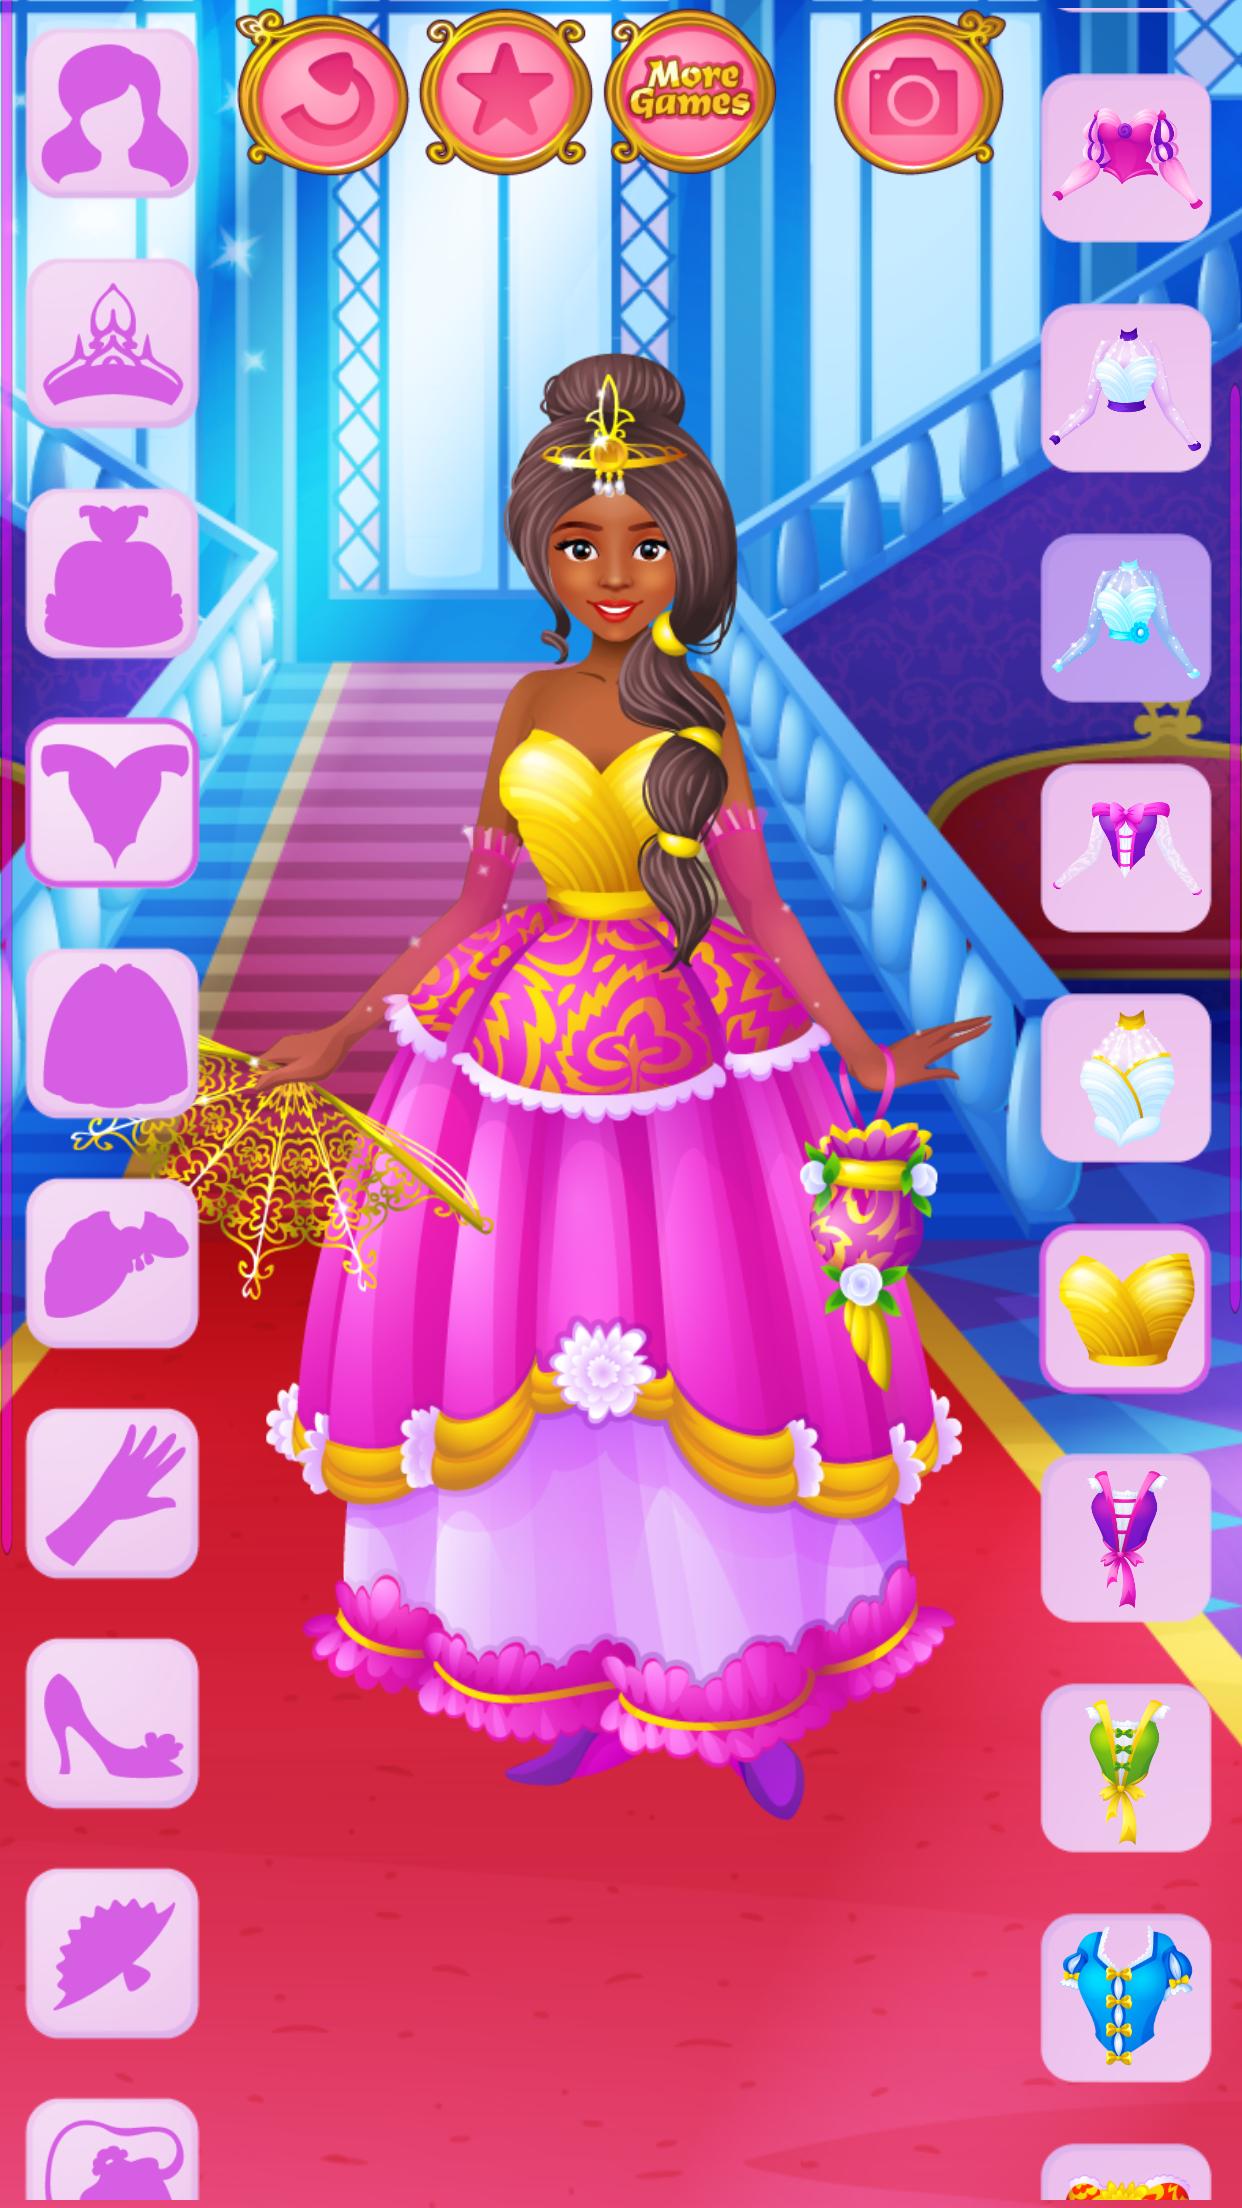 Dress up - Games for Girls 1.3.2 Screenshot 19